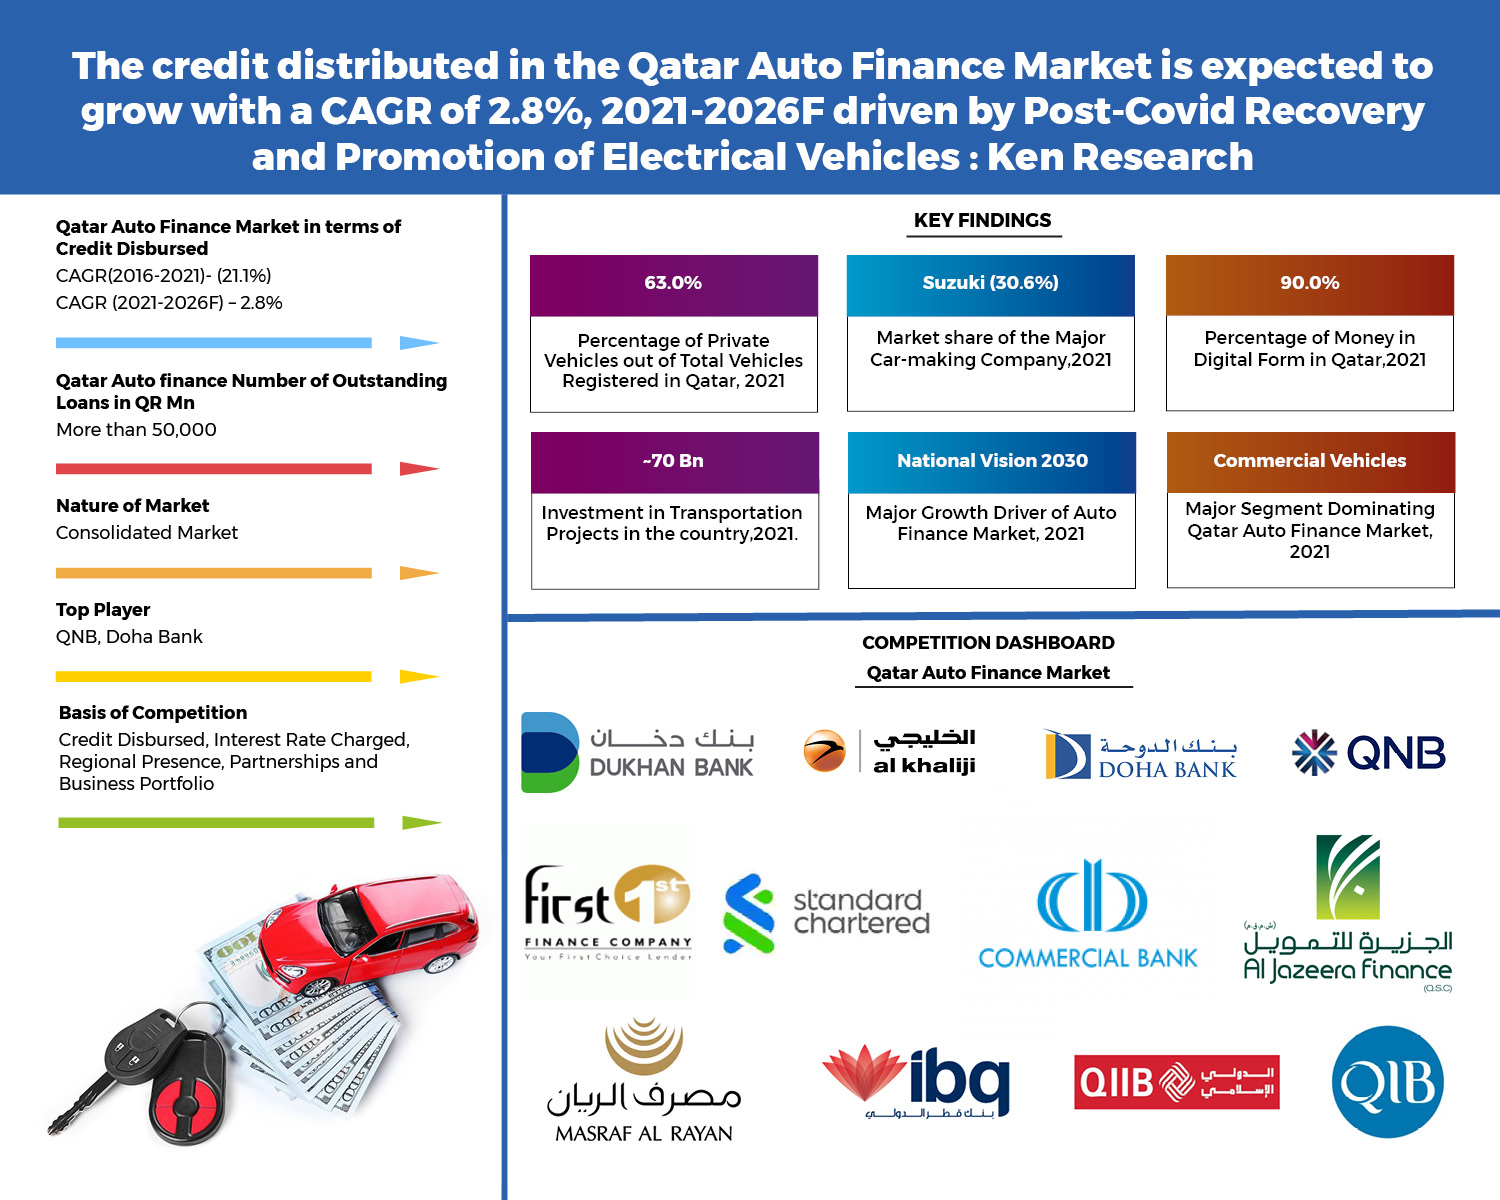 Qatar Auto Finance Market Outlook